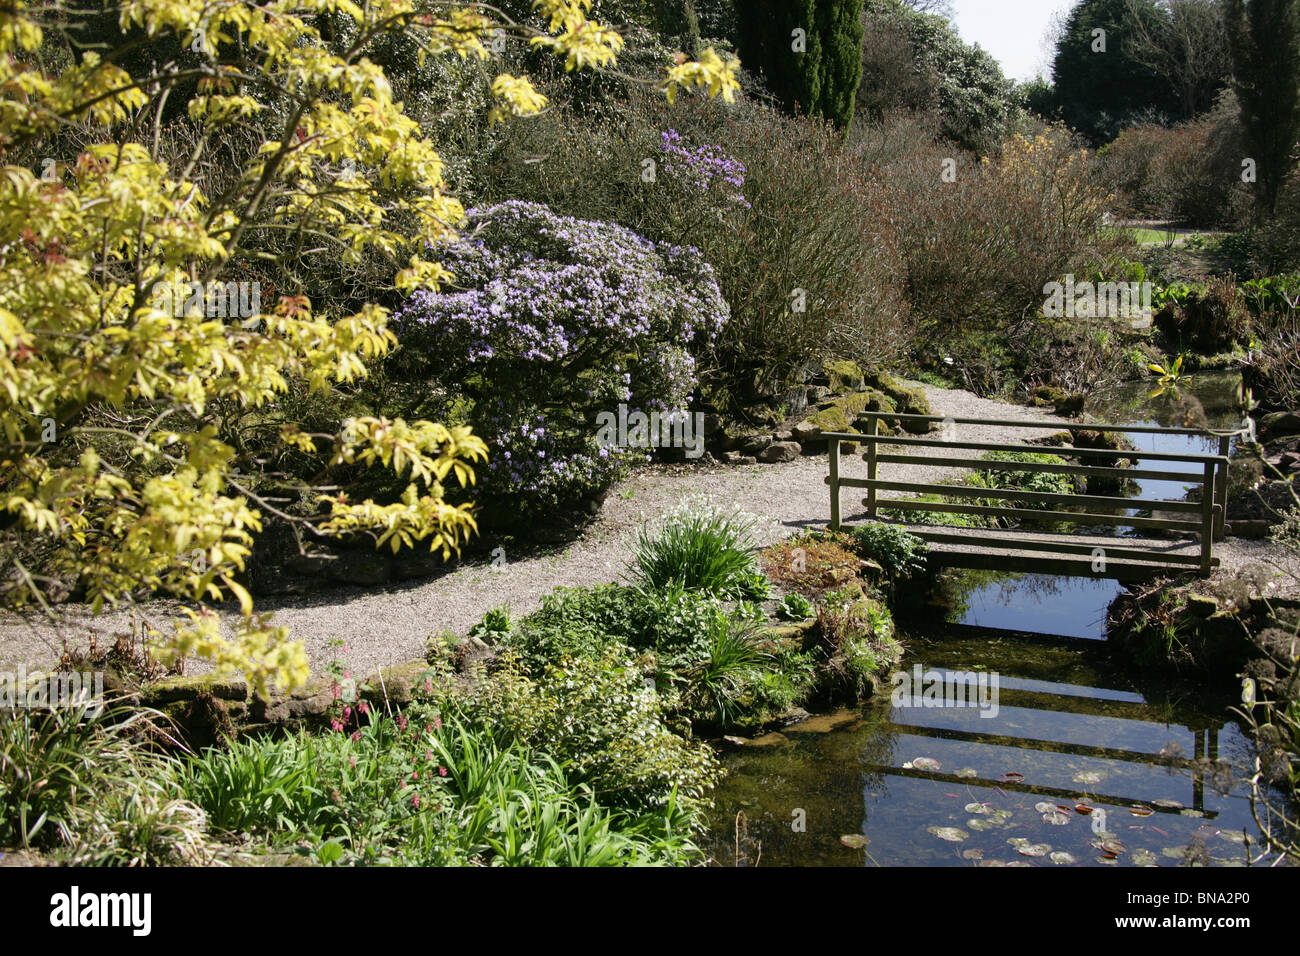 Arley Hall & Gardens, Inghilterra. La molla vista del giardino Rootree a Arley Hall Gardens. Foto Stock